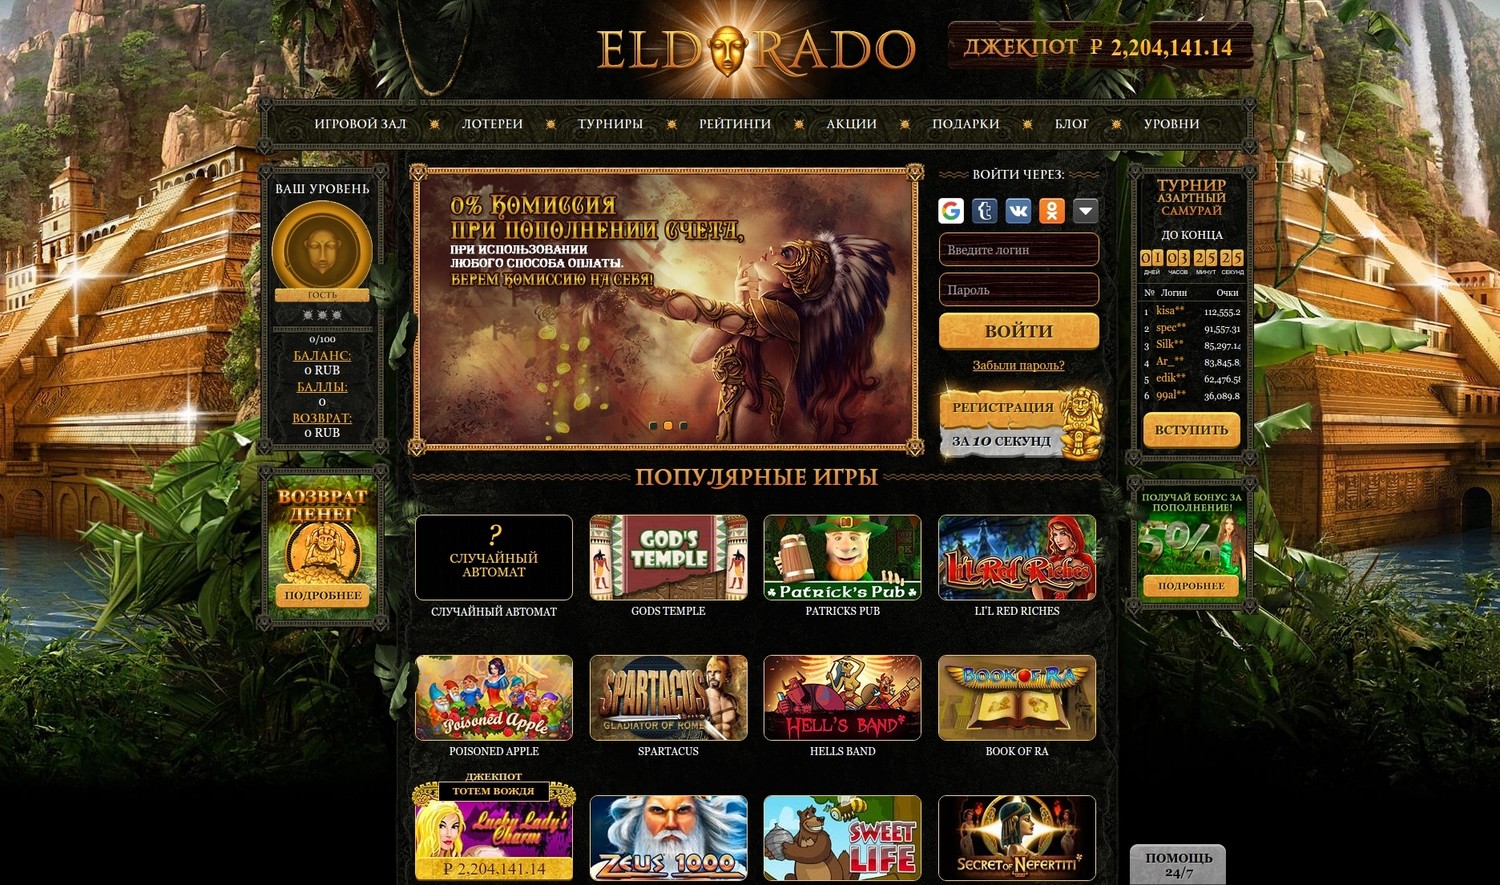 Игровые автоматы на деньги в онлайн казино Эльдорадо